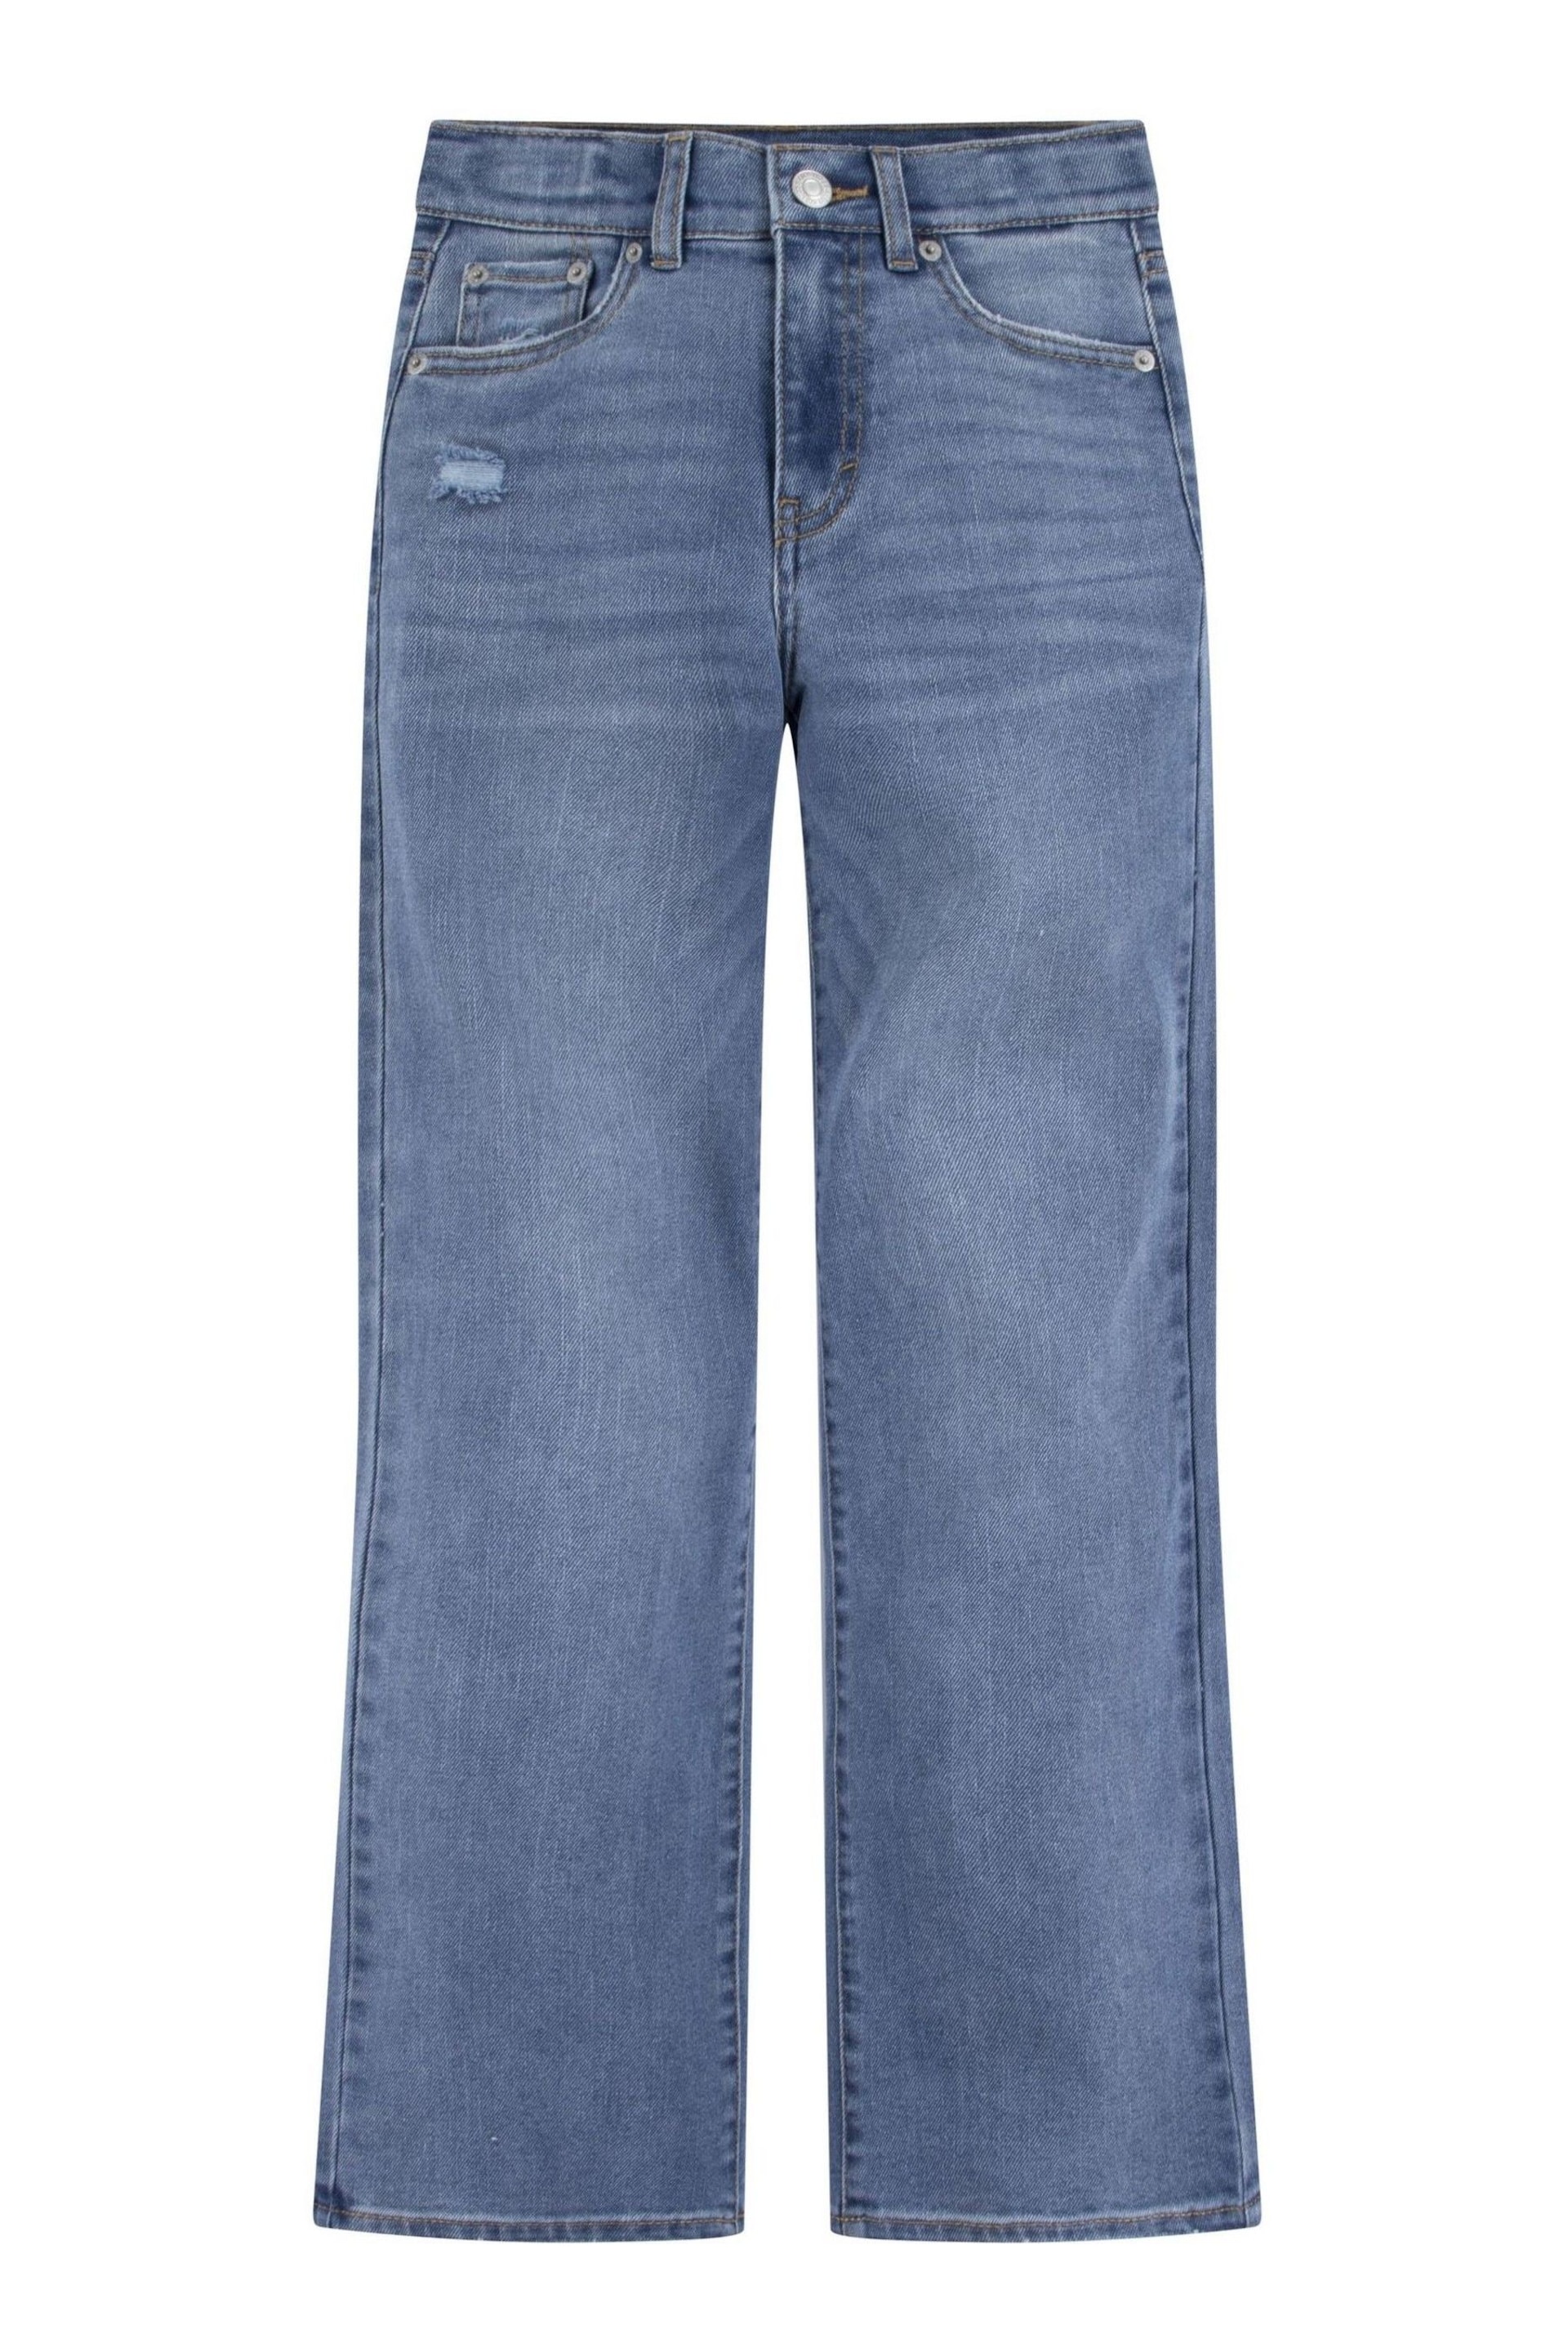 Levi's® Blue Wide Leg Denim Jeans - Image 1 of 4